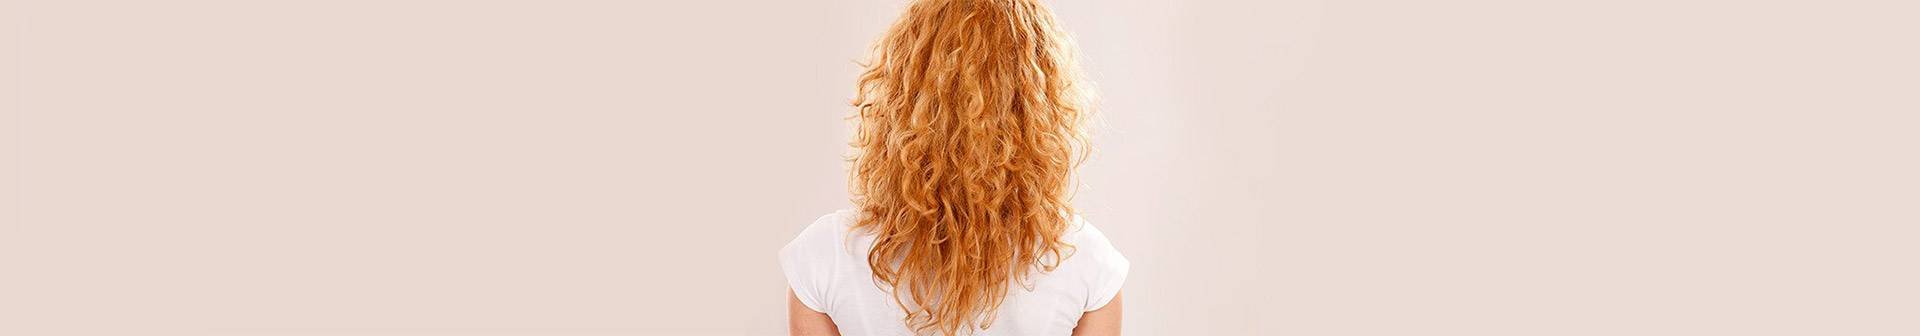 Tips om de blonde haarkleur te kiezen die het best bij jou past.